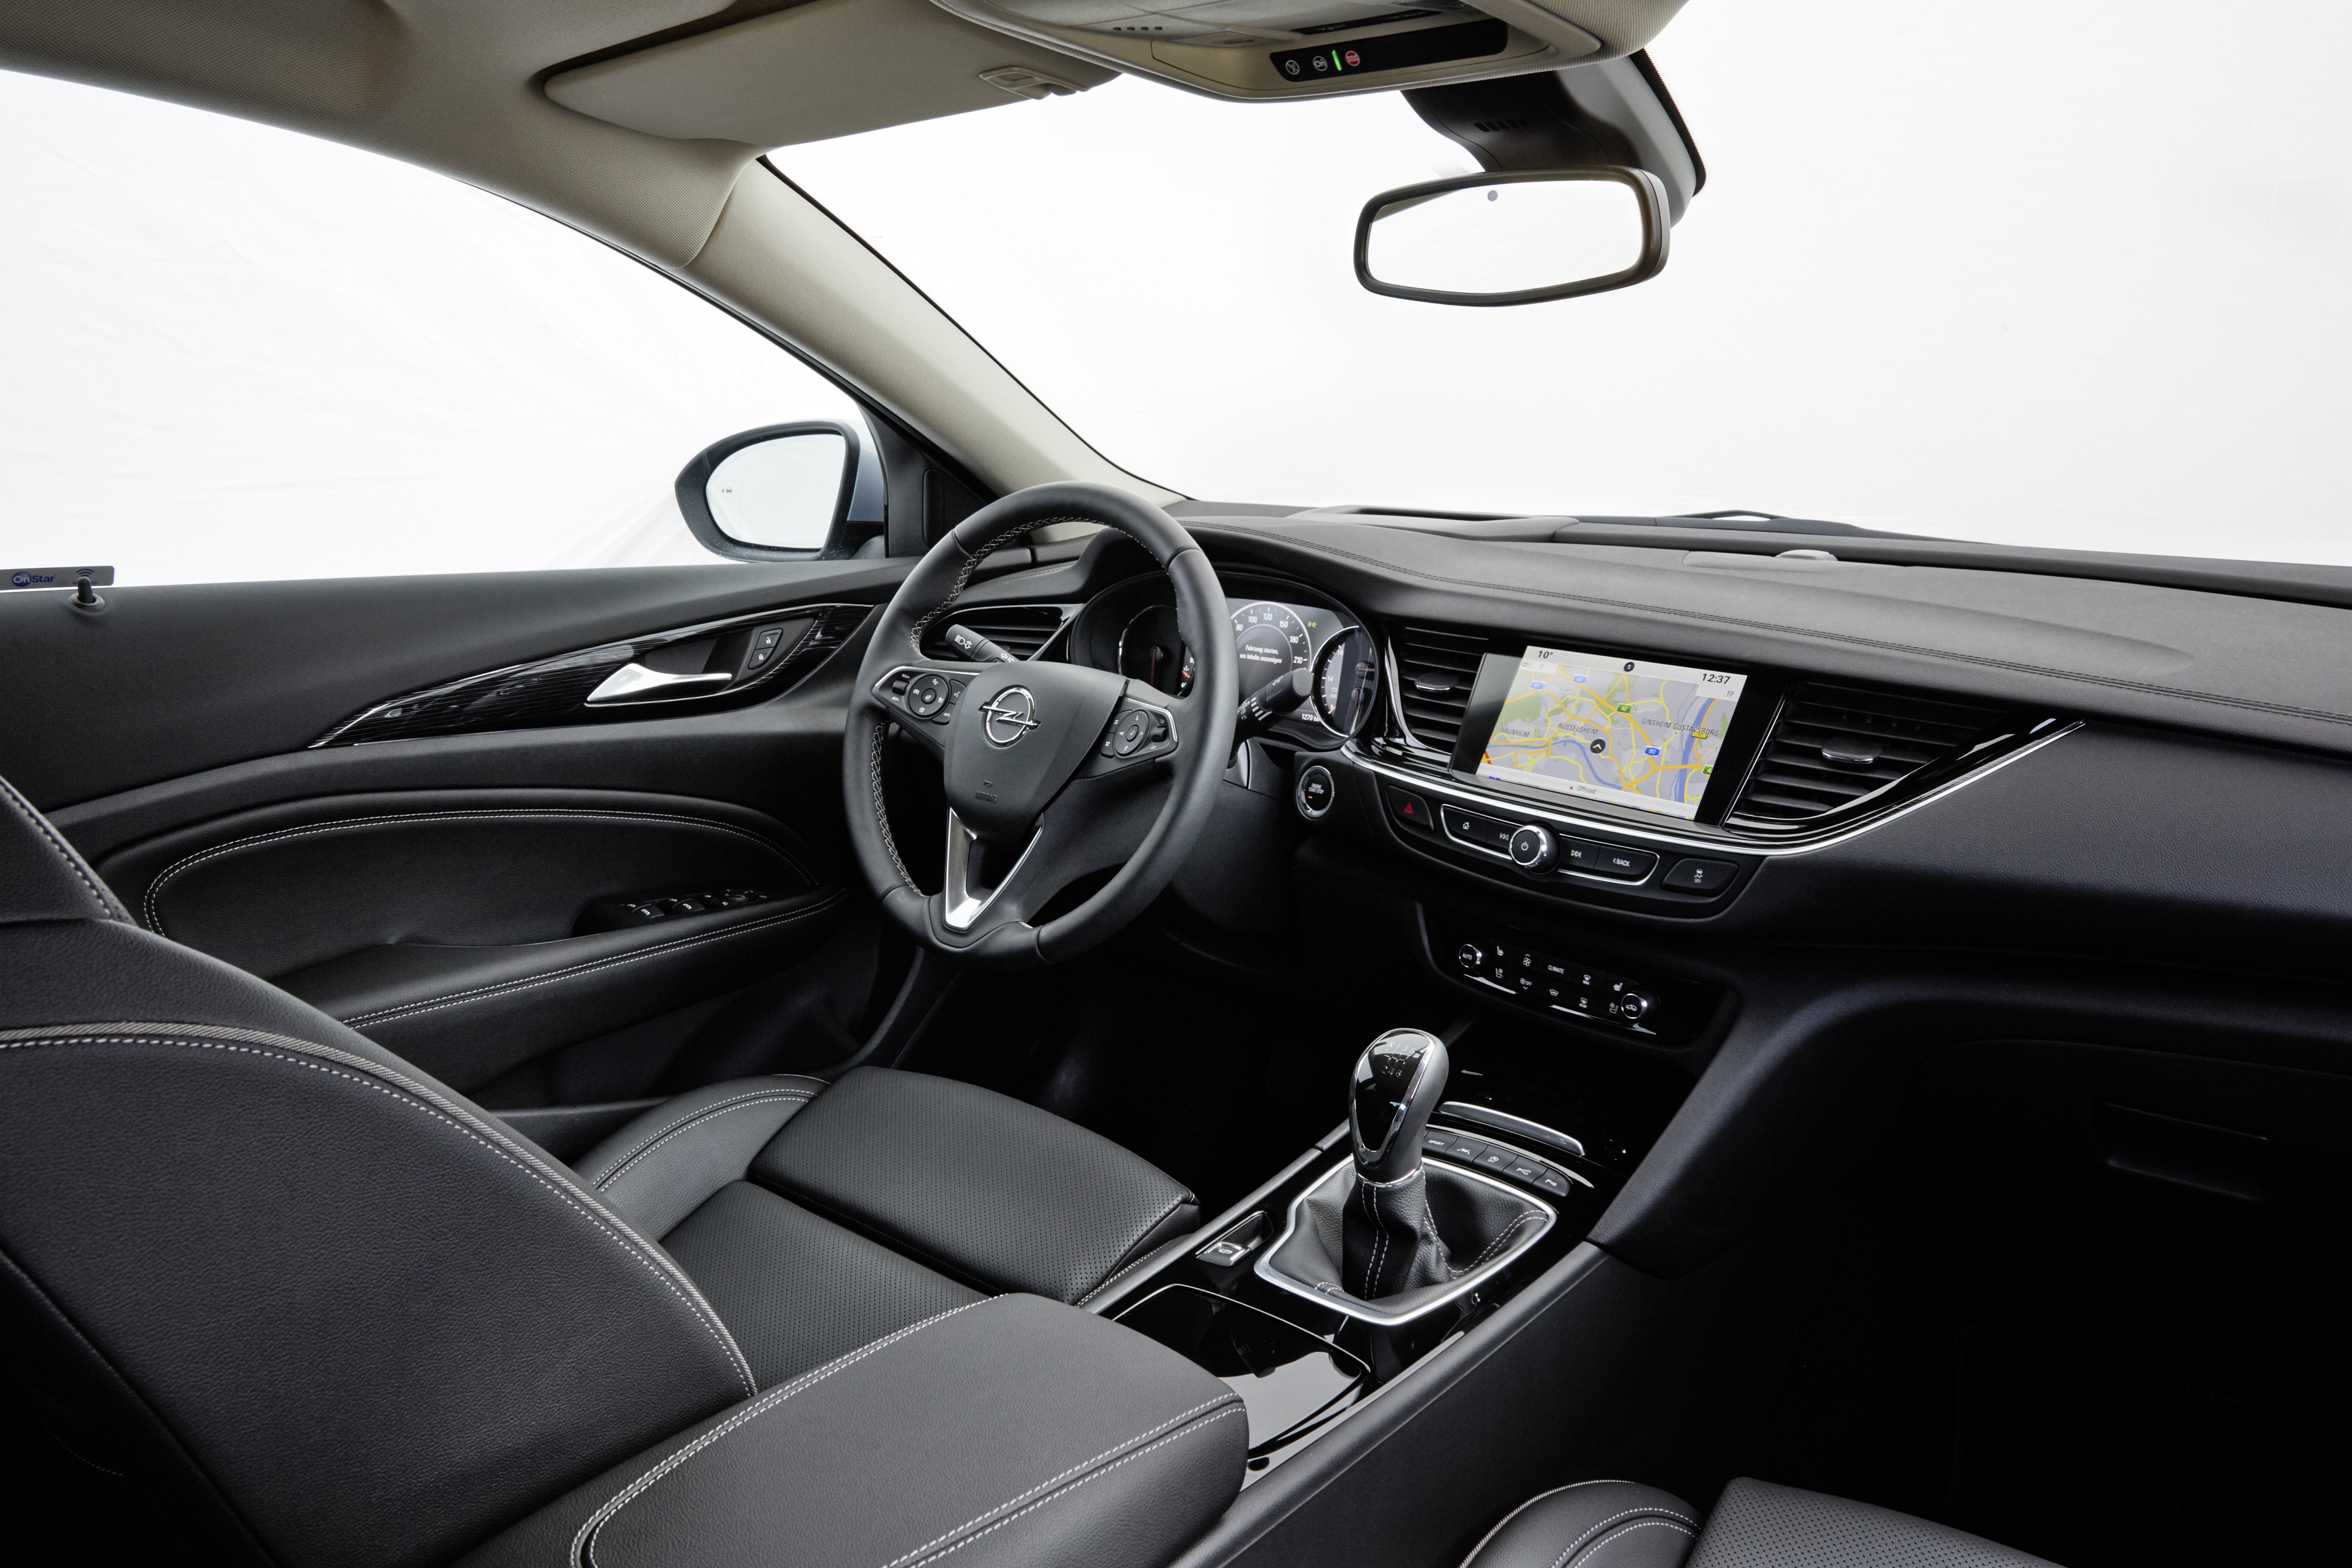 What Dieselgate? 2018 Opel Insignia Adds New 2.0 BiTurbo Diesel